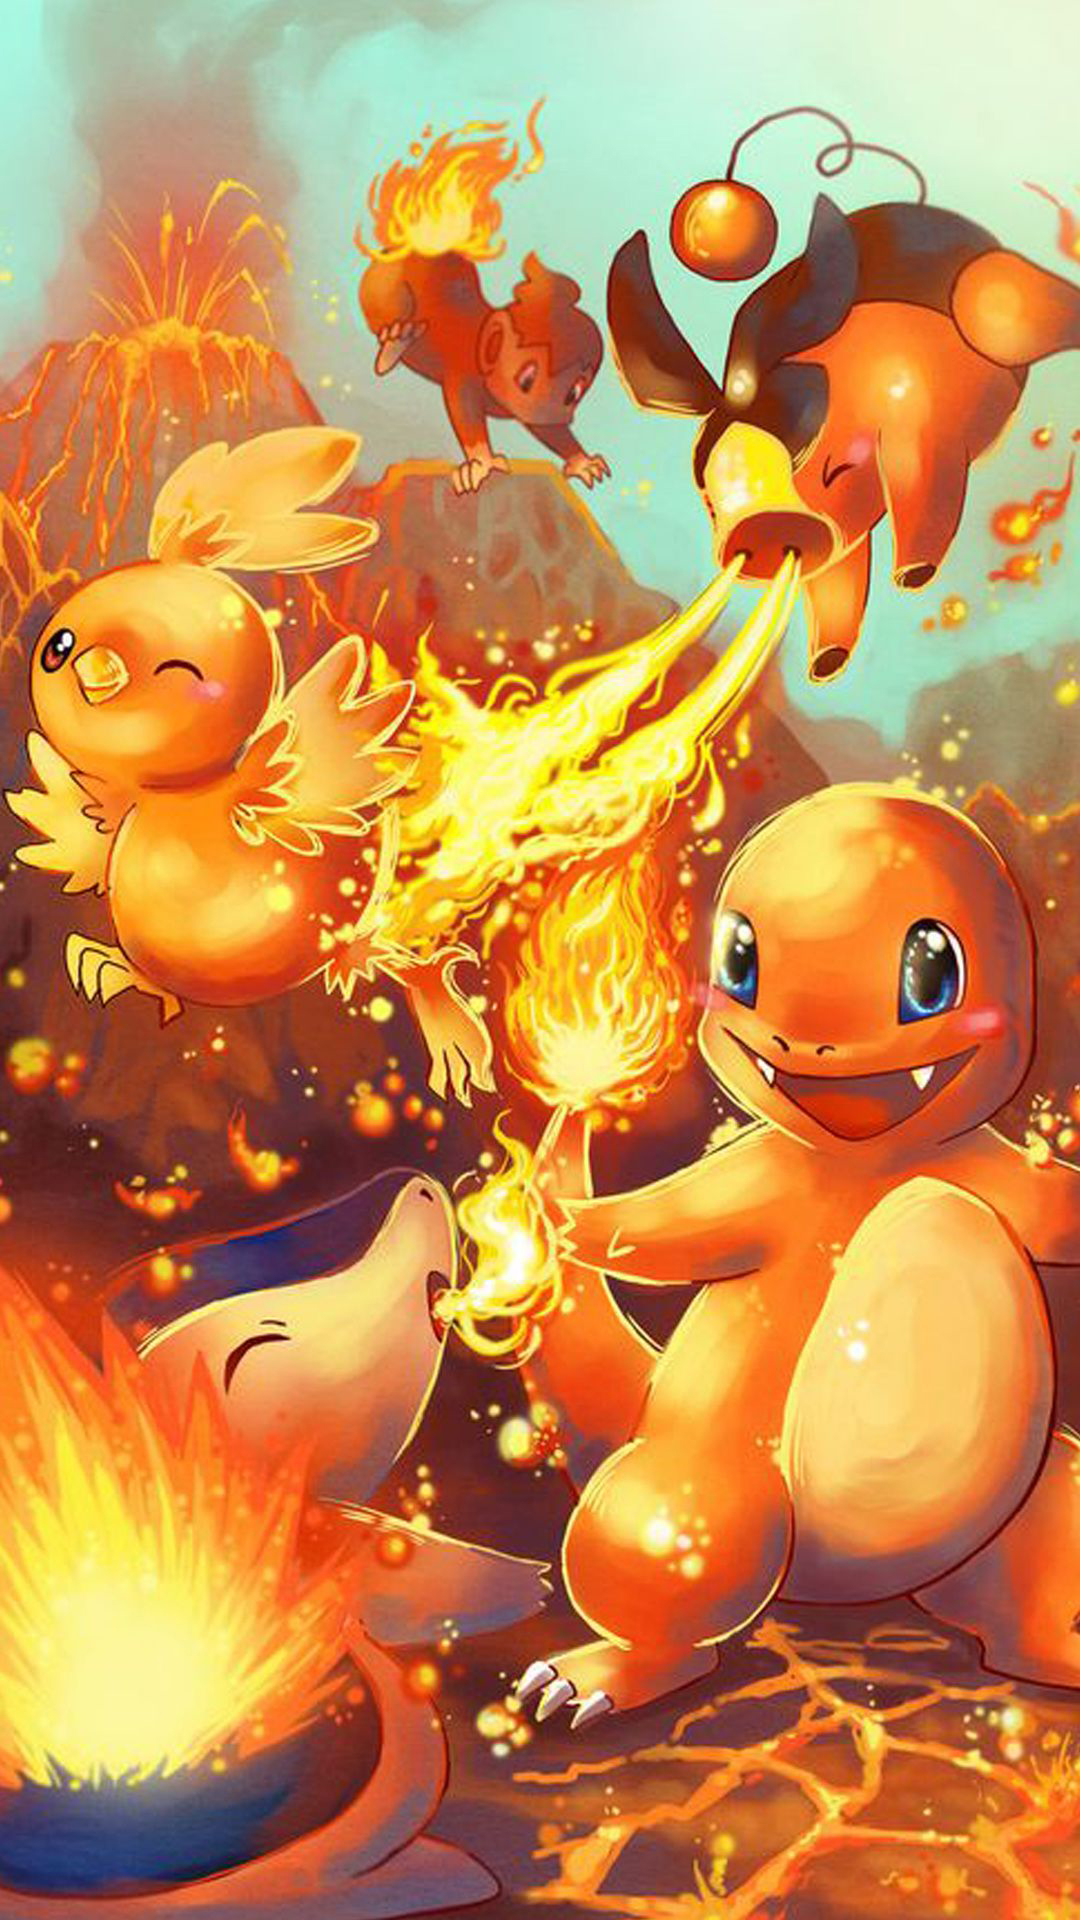 Pokemon Go Wallpaper - Pokemon Backgrounds For Iphone - 1080x1920 Wallpaper  